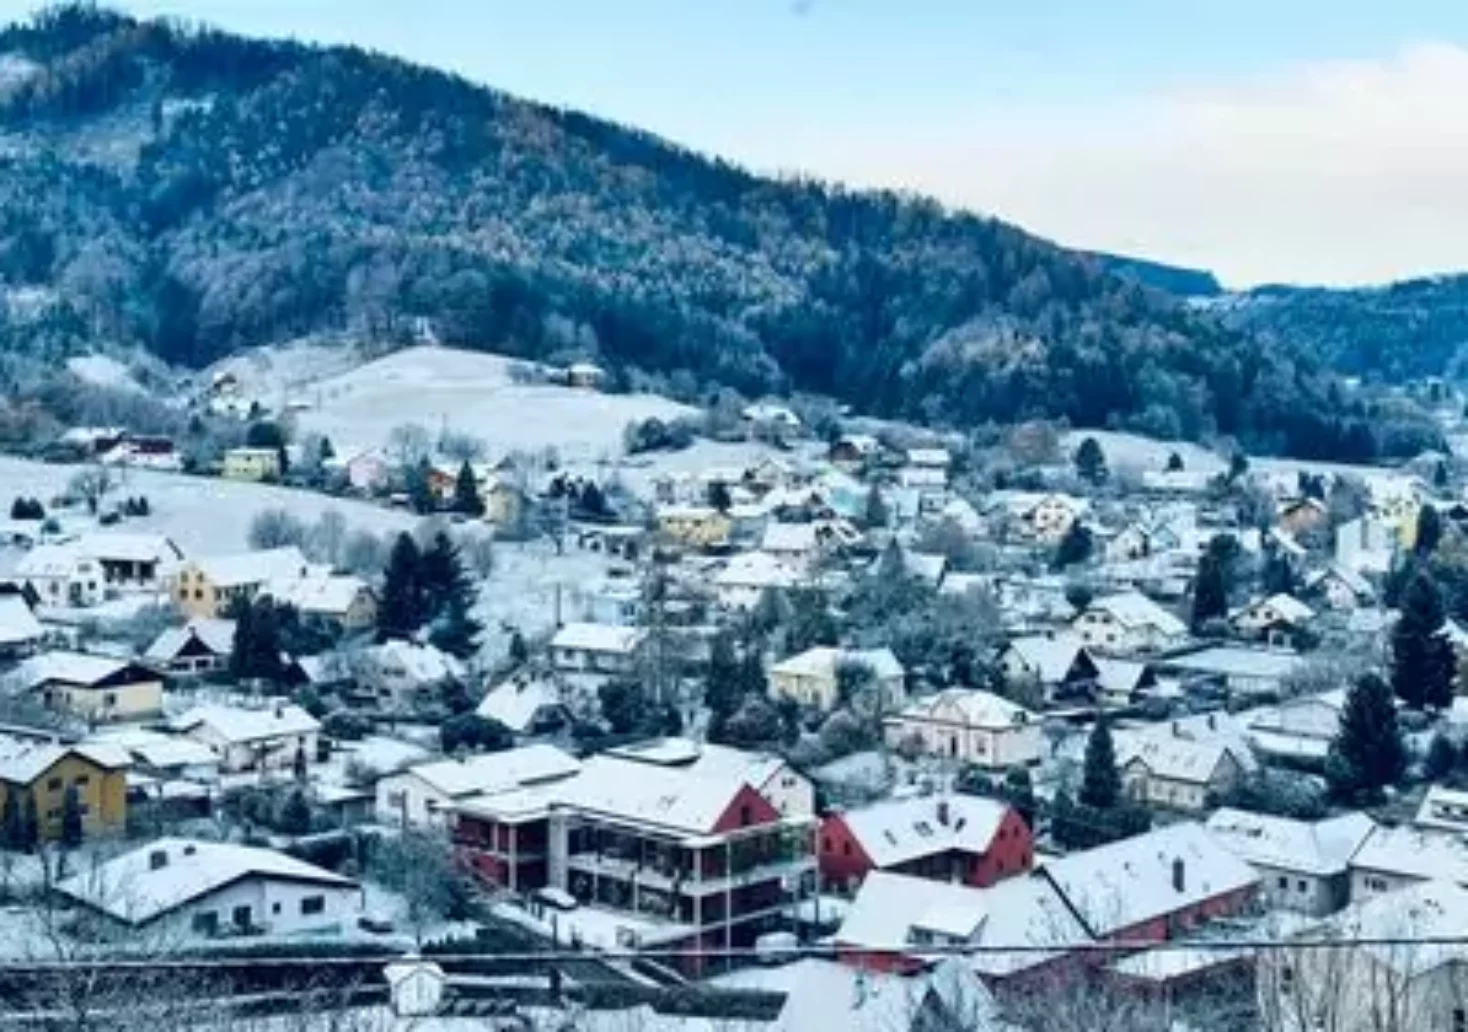 Bild auf 5min.at zeigt eine Schneelandschaft in Judendorf-Straßengel bei Graz.